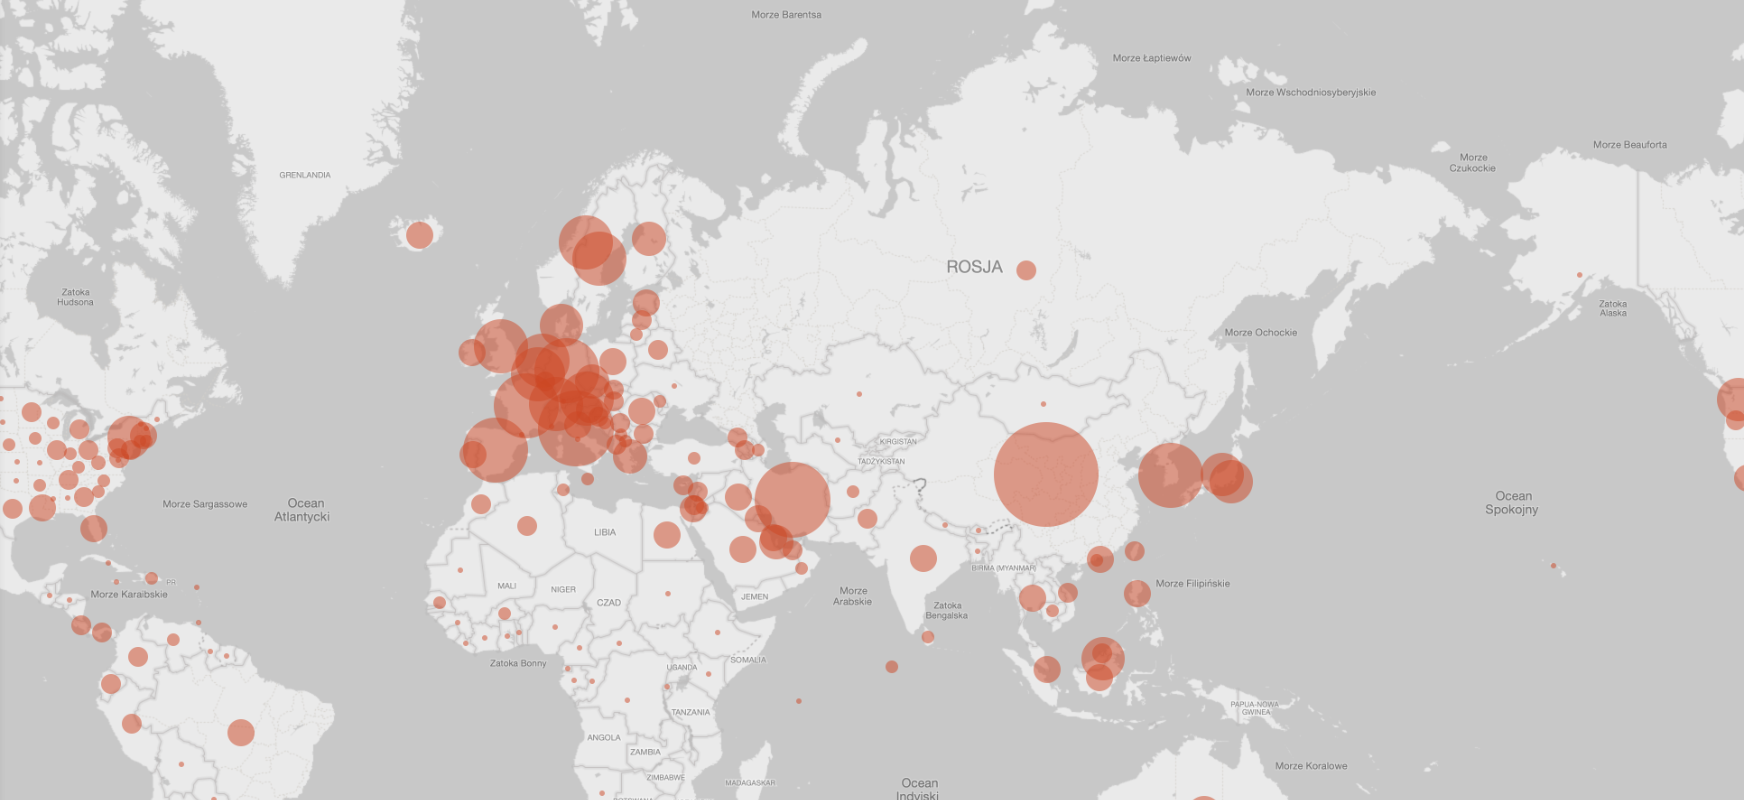  Microsoft-ek koronavirus mapa egin zuen.  Bing COVID Tracker-en ere Polonia dago
